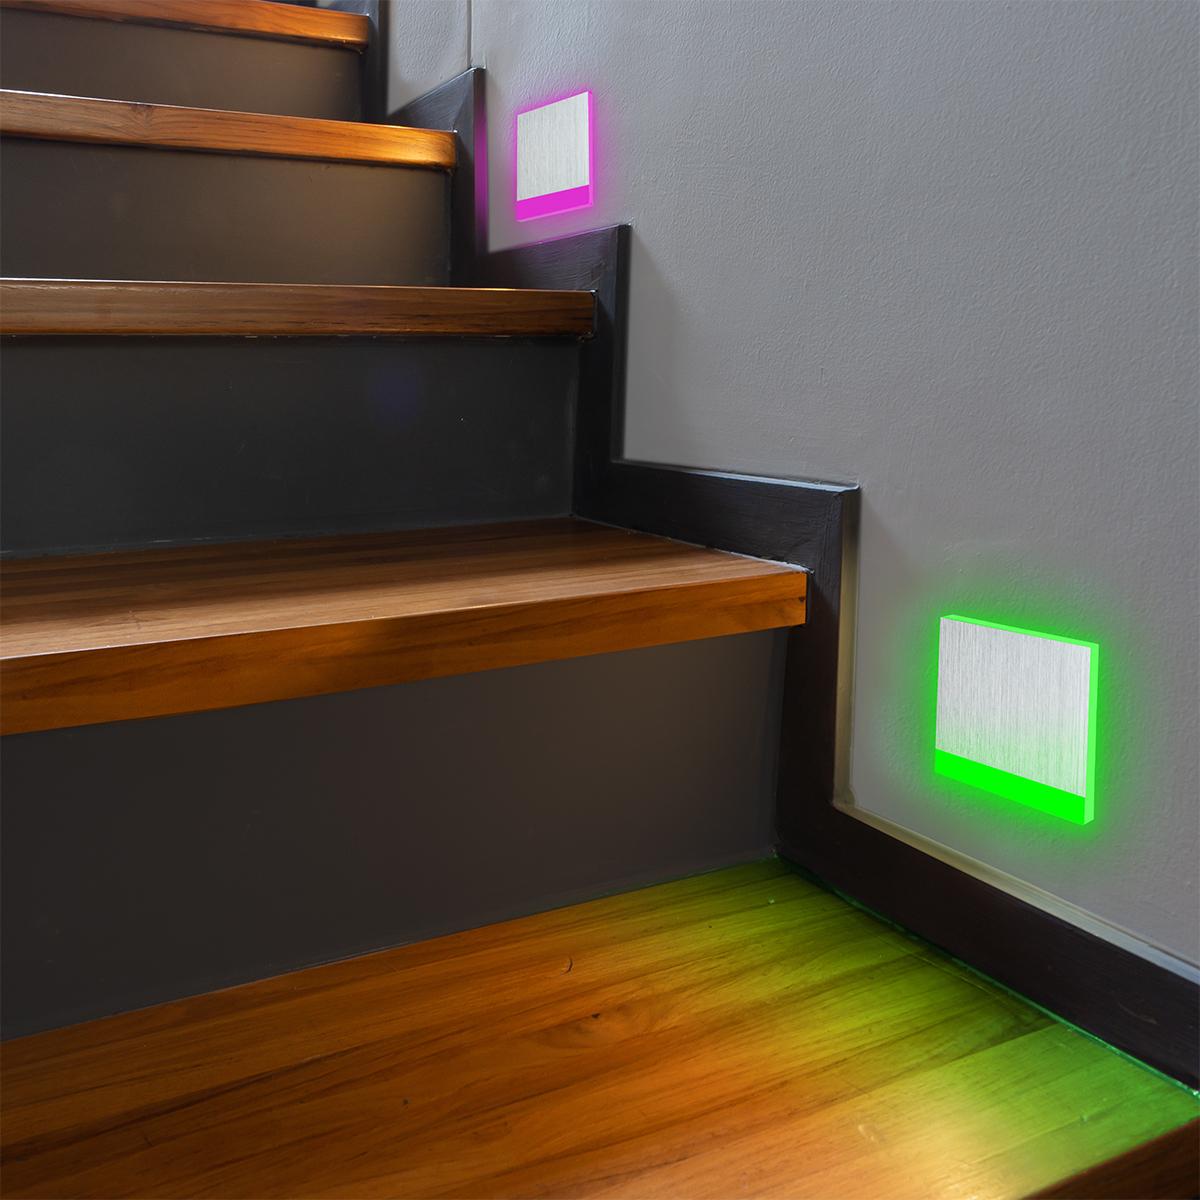 LED Treppenleuchte IP44 eckig Alu-gebürstet - Lichtfarbe: RGB Warmweiß 3W - Lichtaustritt: Orbis